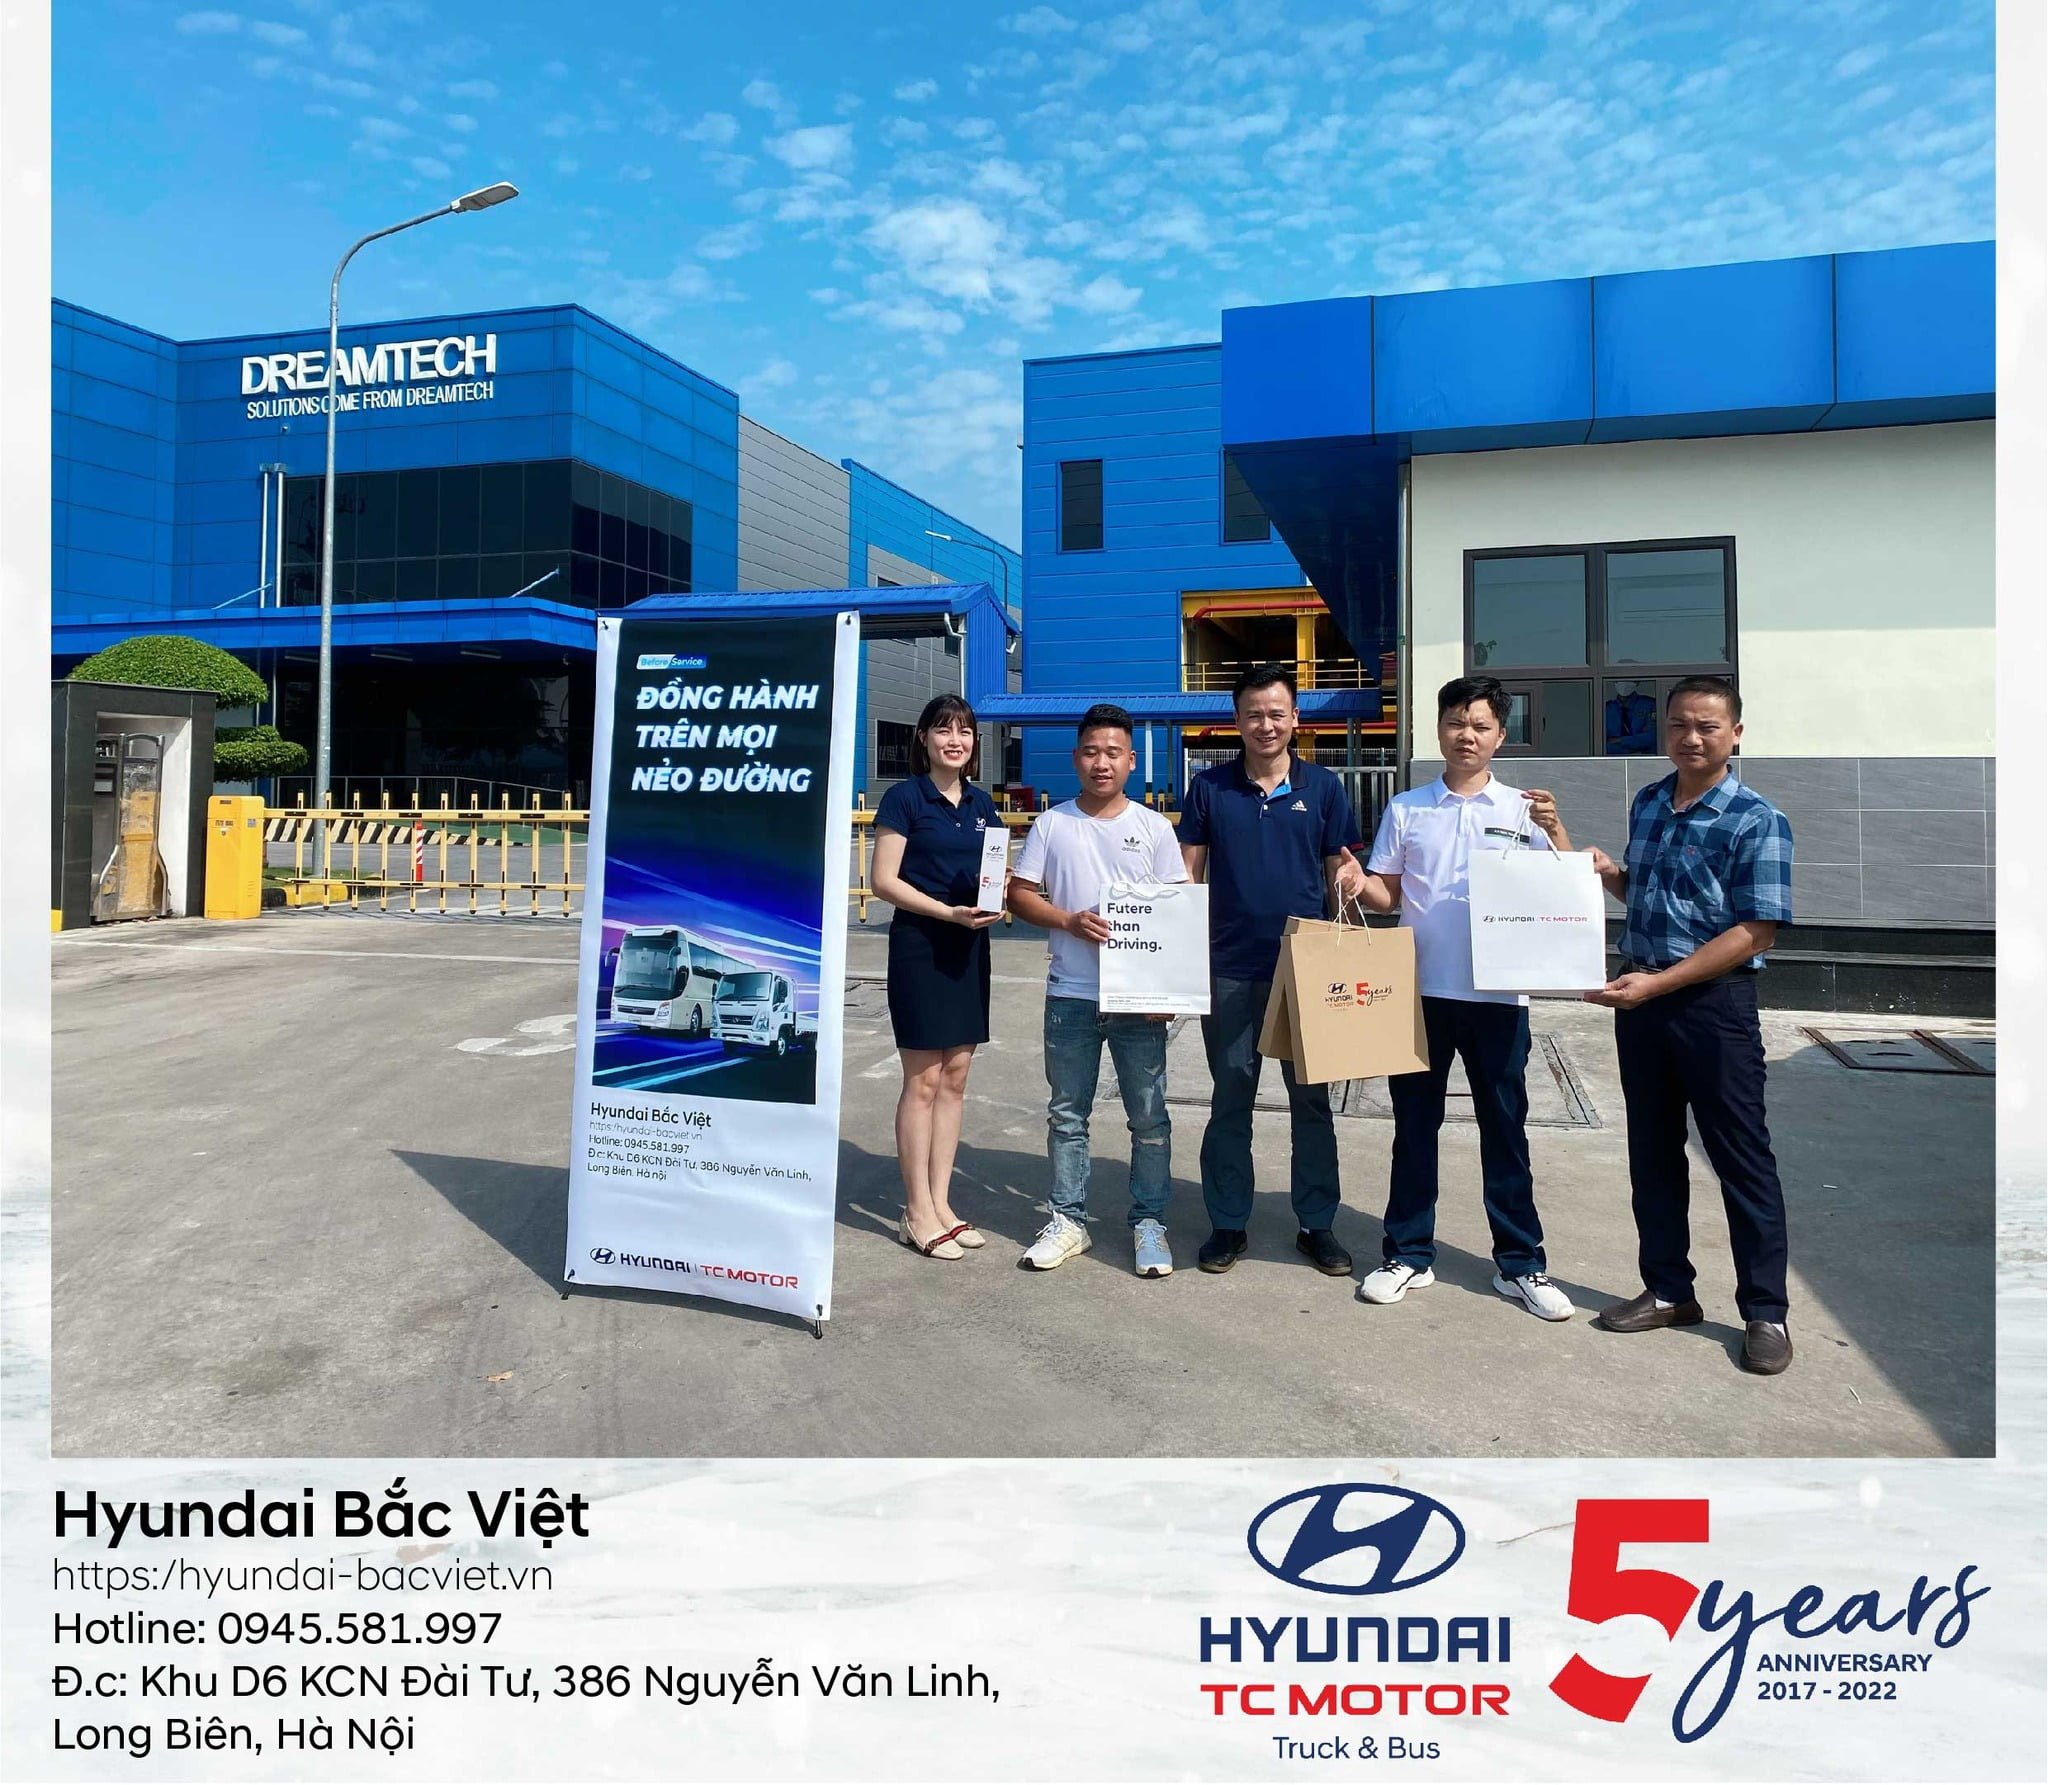 Hyundai Bắc Việt tiếp tục triển khai chương trình “FLEET – Đồng hành trên mọi nẻo đường” cho khách hàng ở Bắc Ninh – Hưng Yên.